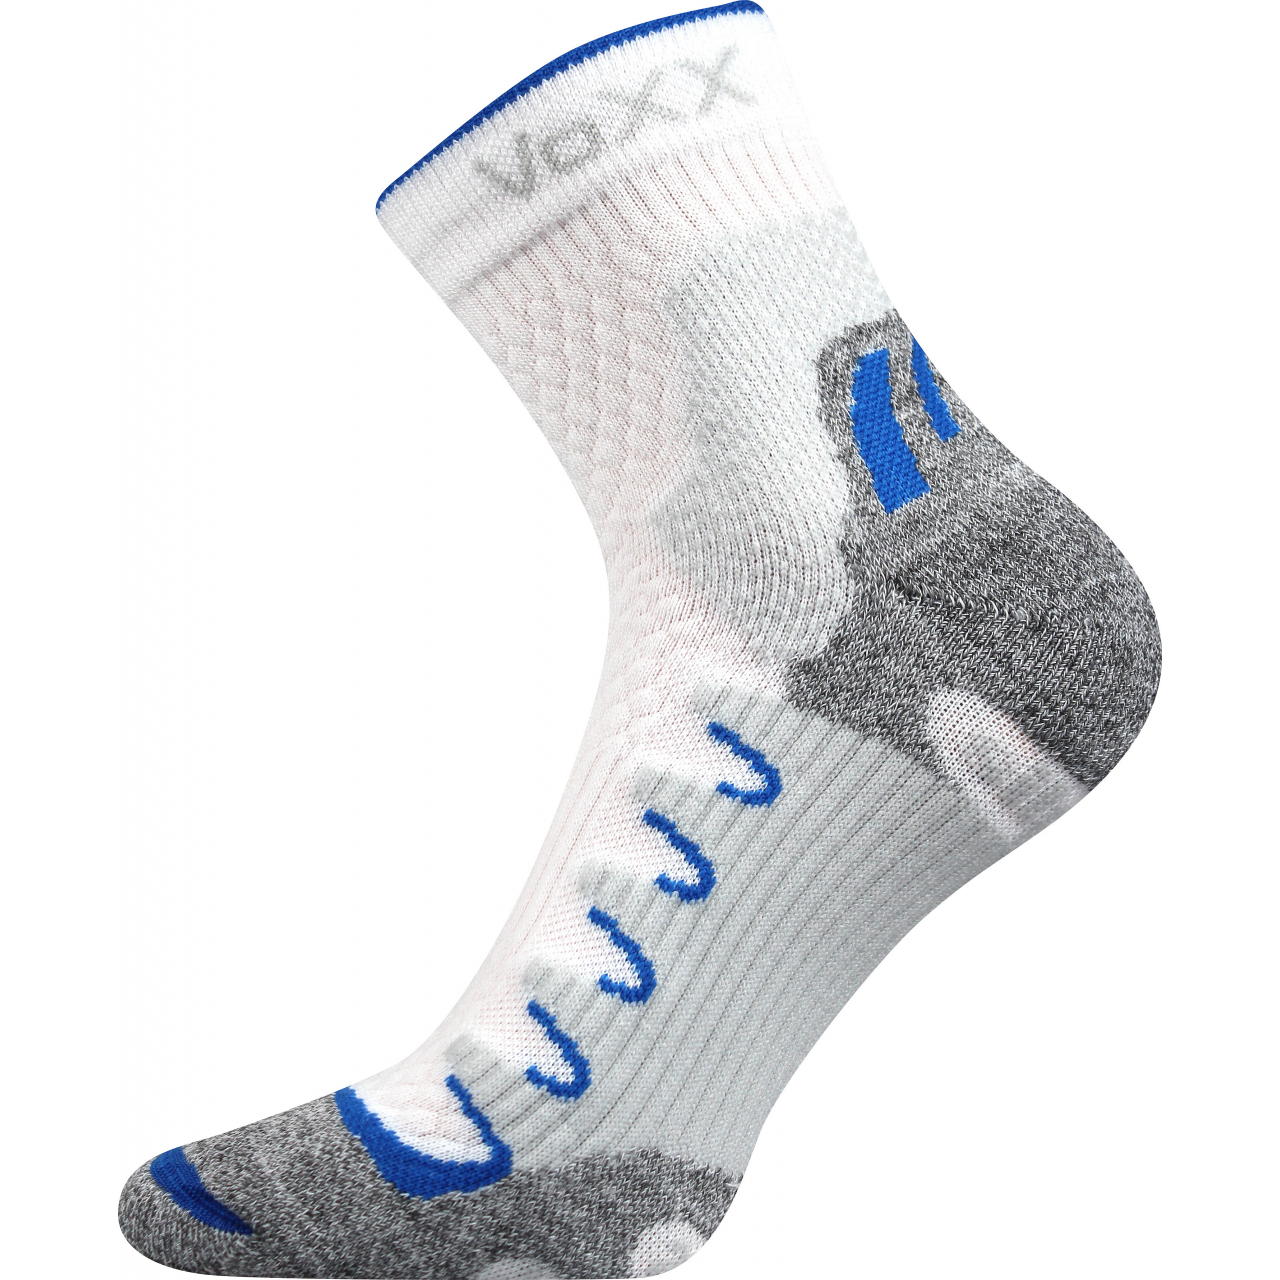 Ponožky snížené sportovní Voxx Synergy silproX - bílé-šedé, 43-46